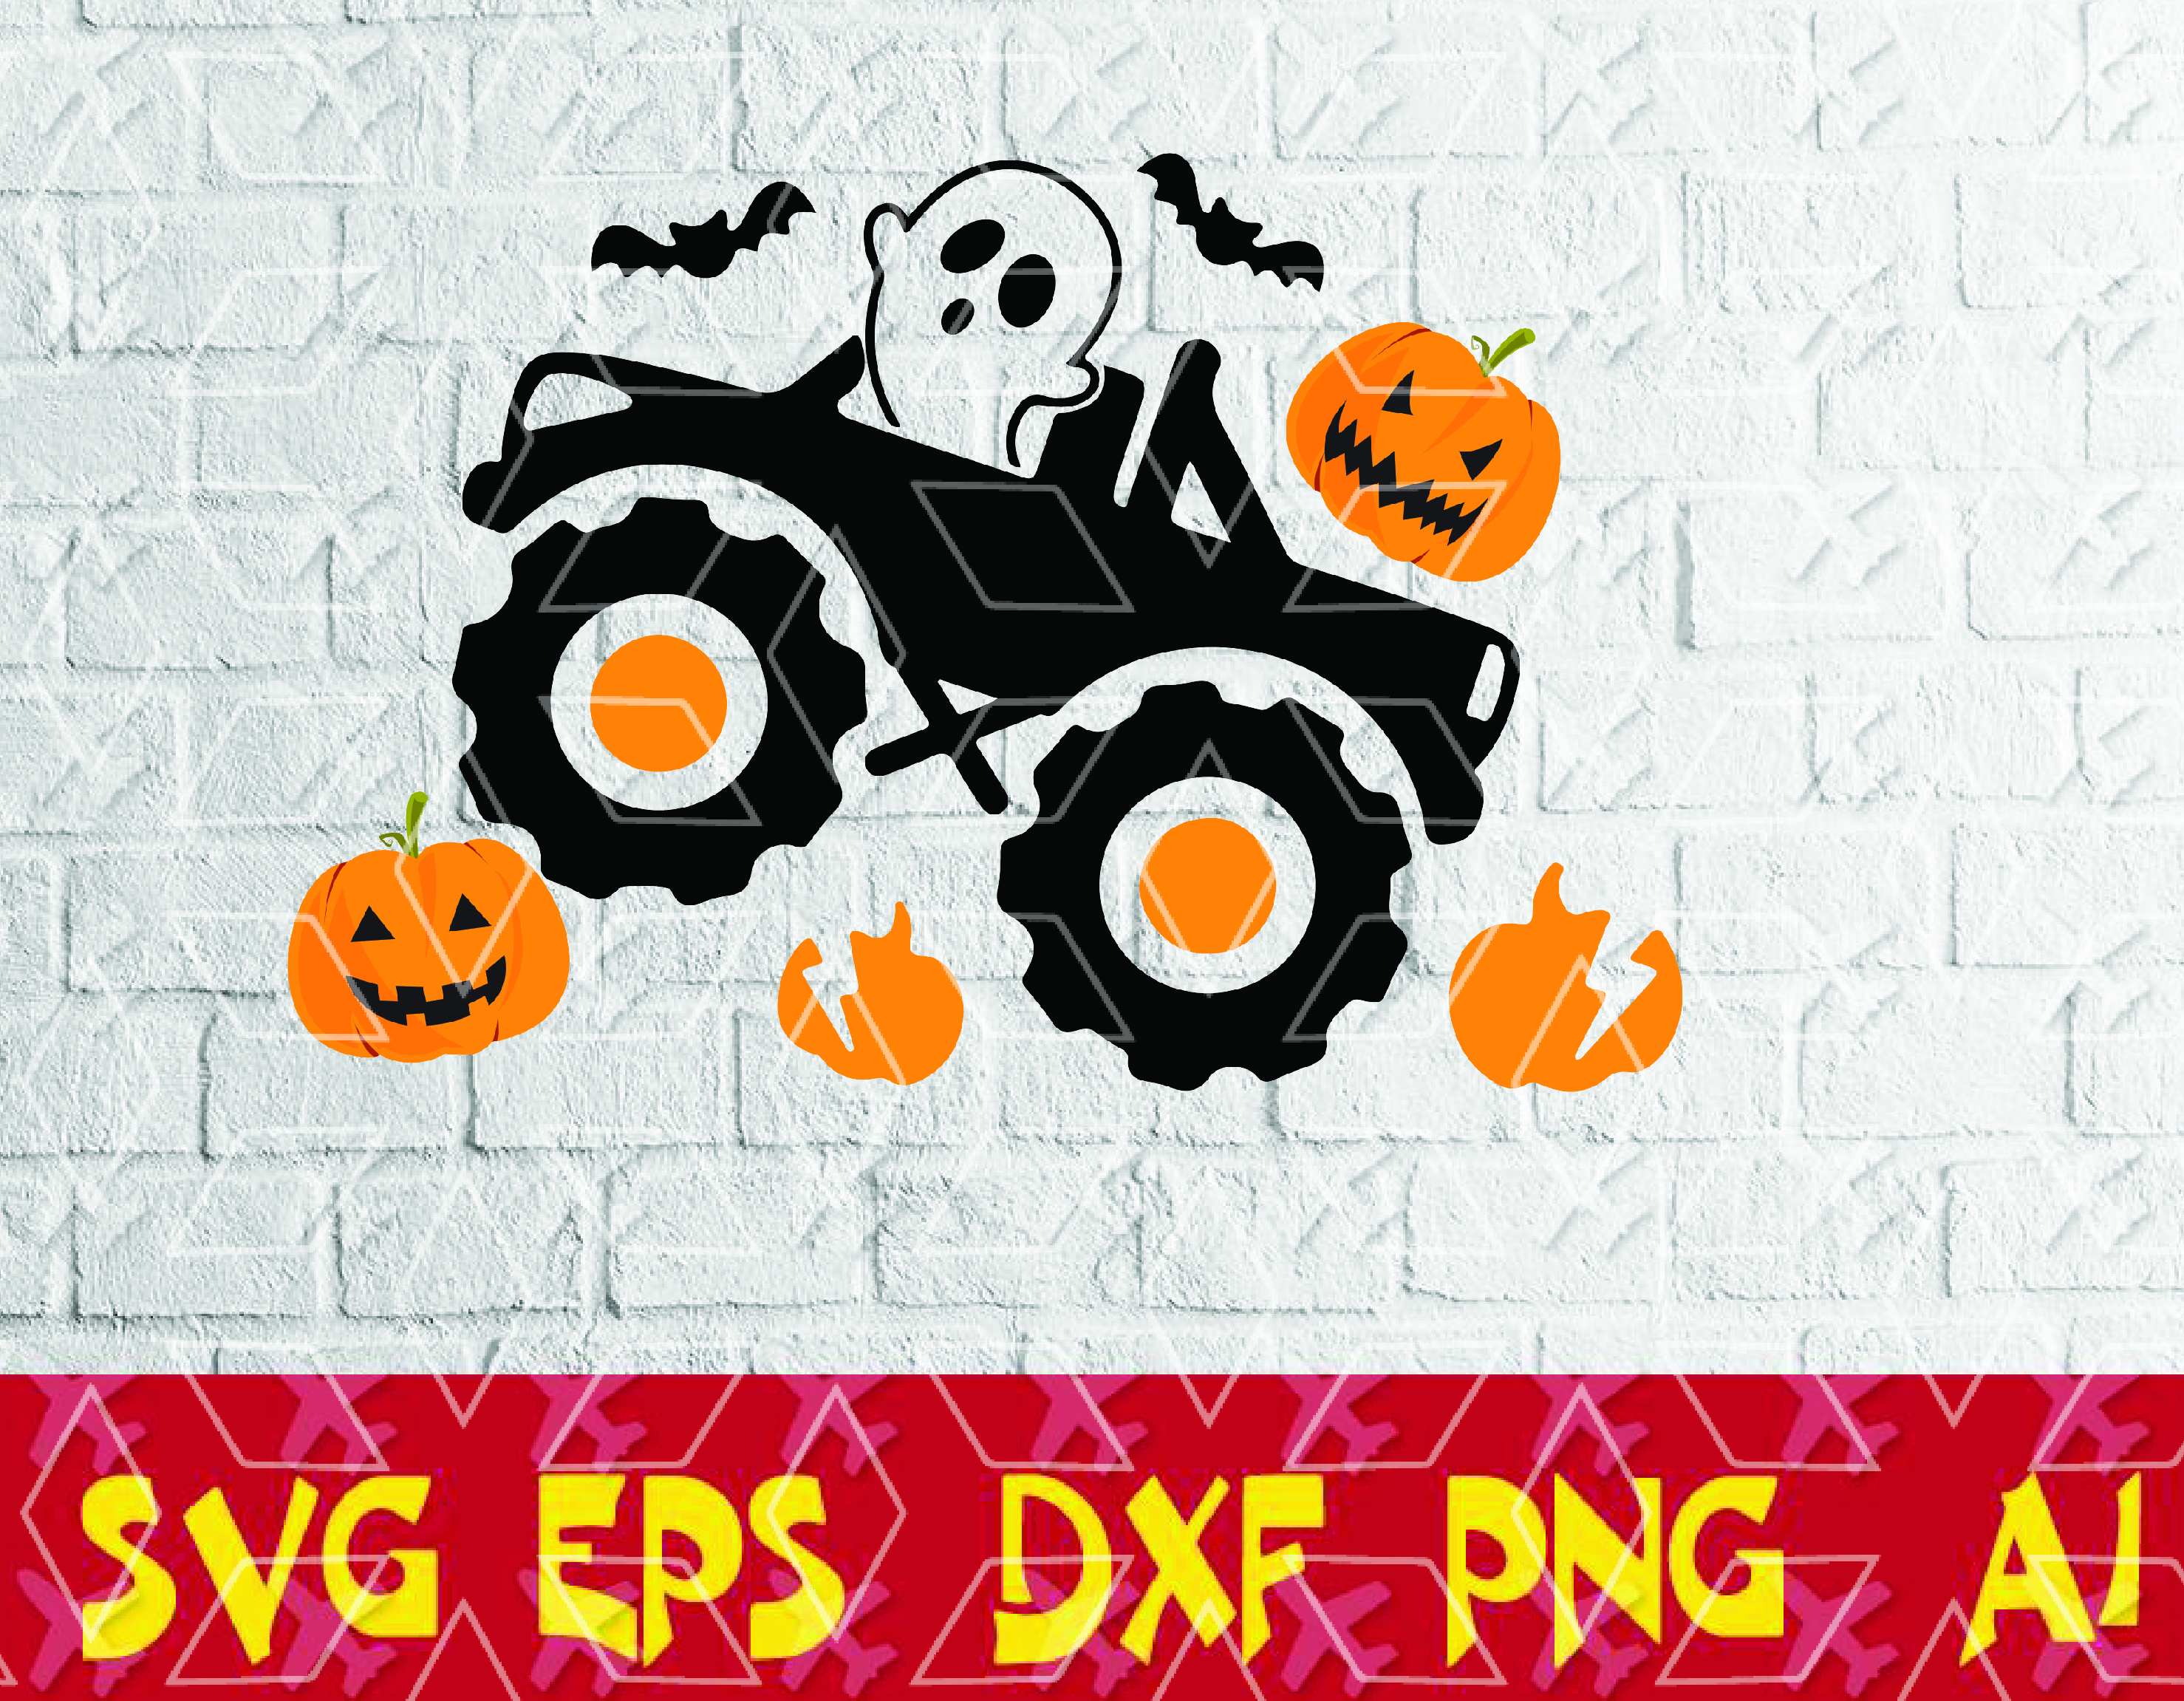 Download Pumpkin Monster Truck Svg Boys Halloween Svg Ghost Svg Dxf Eps Png Kids Clipart Fall Cut Files Boy Shirt Design Silhouette Cricut Designbtf Com